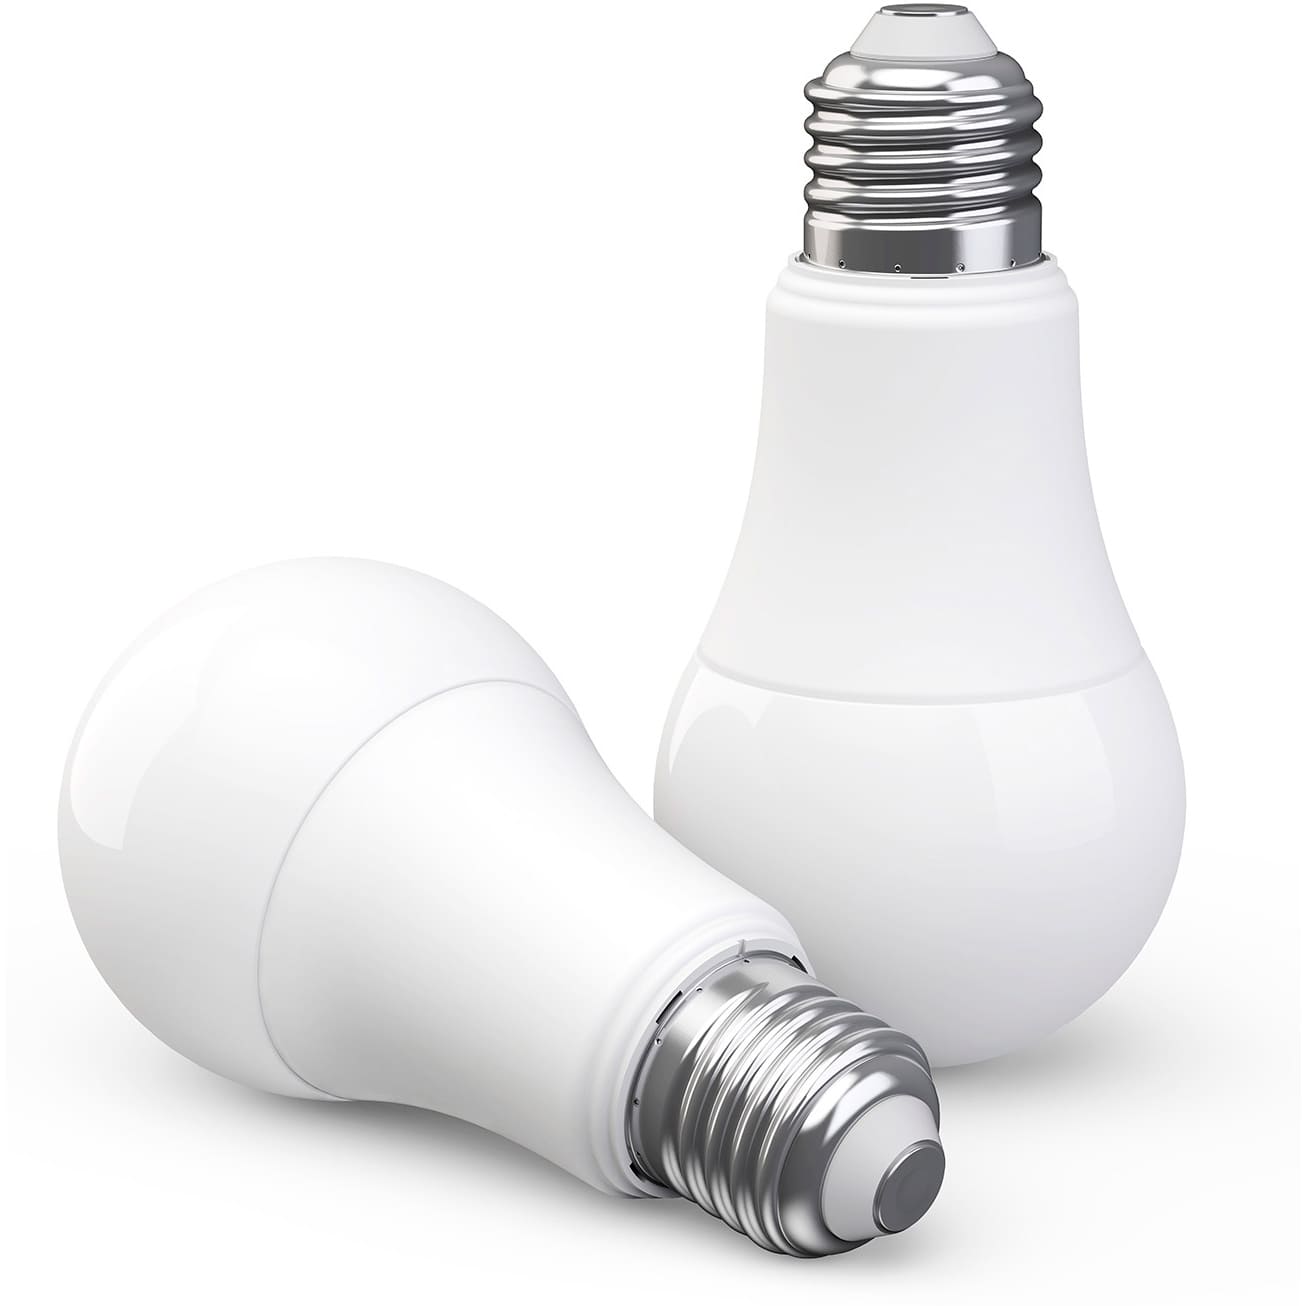 Лампа Aqara LED Light Bulb